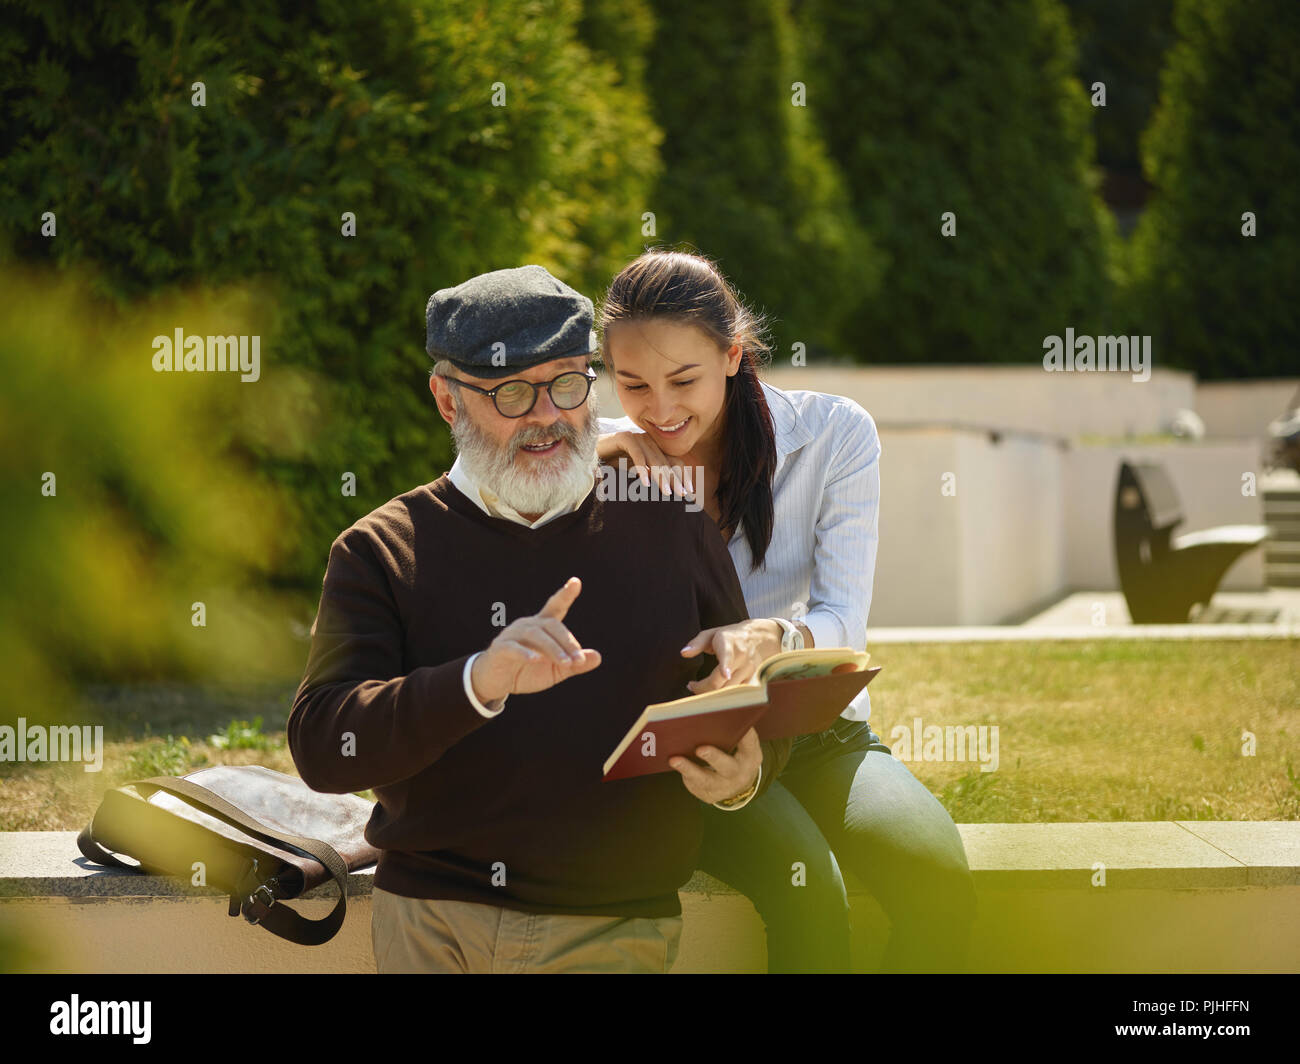 Aider quelqu'un que vous aimez. Portrait of young smiling girl embracing grand-père avec réserve contre city park. communauté et de vie de la famille concept Banque D'Images